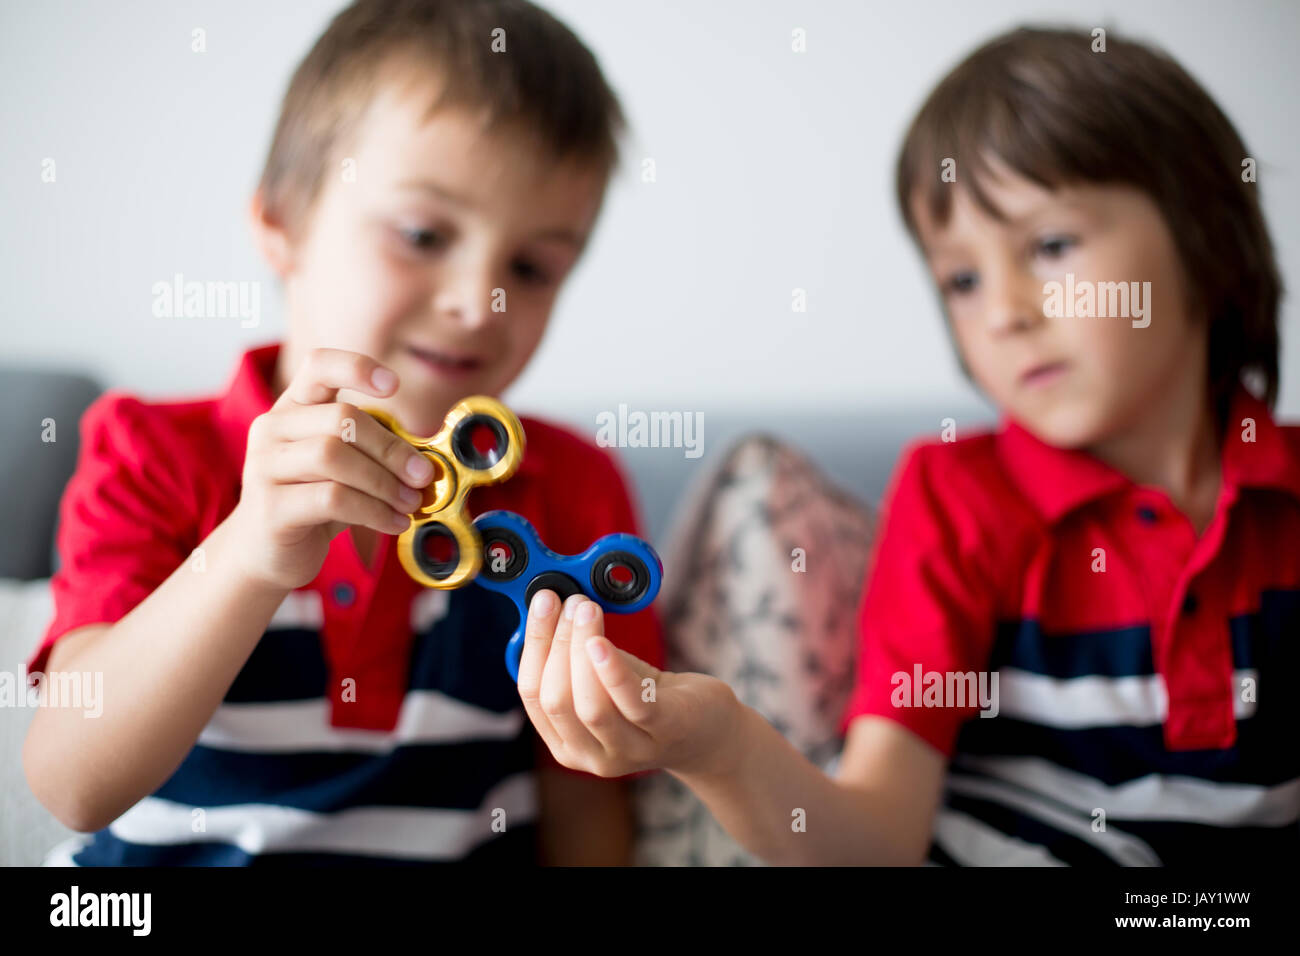 Meine lieben Kinder, junge Brüder spielen mit bunten Fidget Spinner Spielzeug um Stress zu Hause Stockfoto